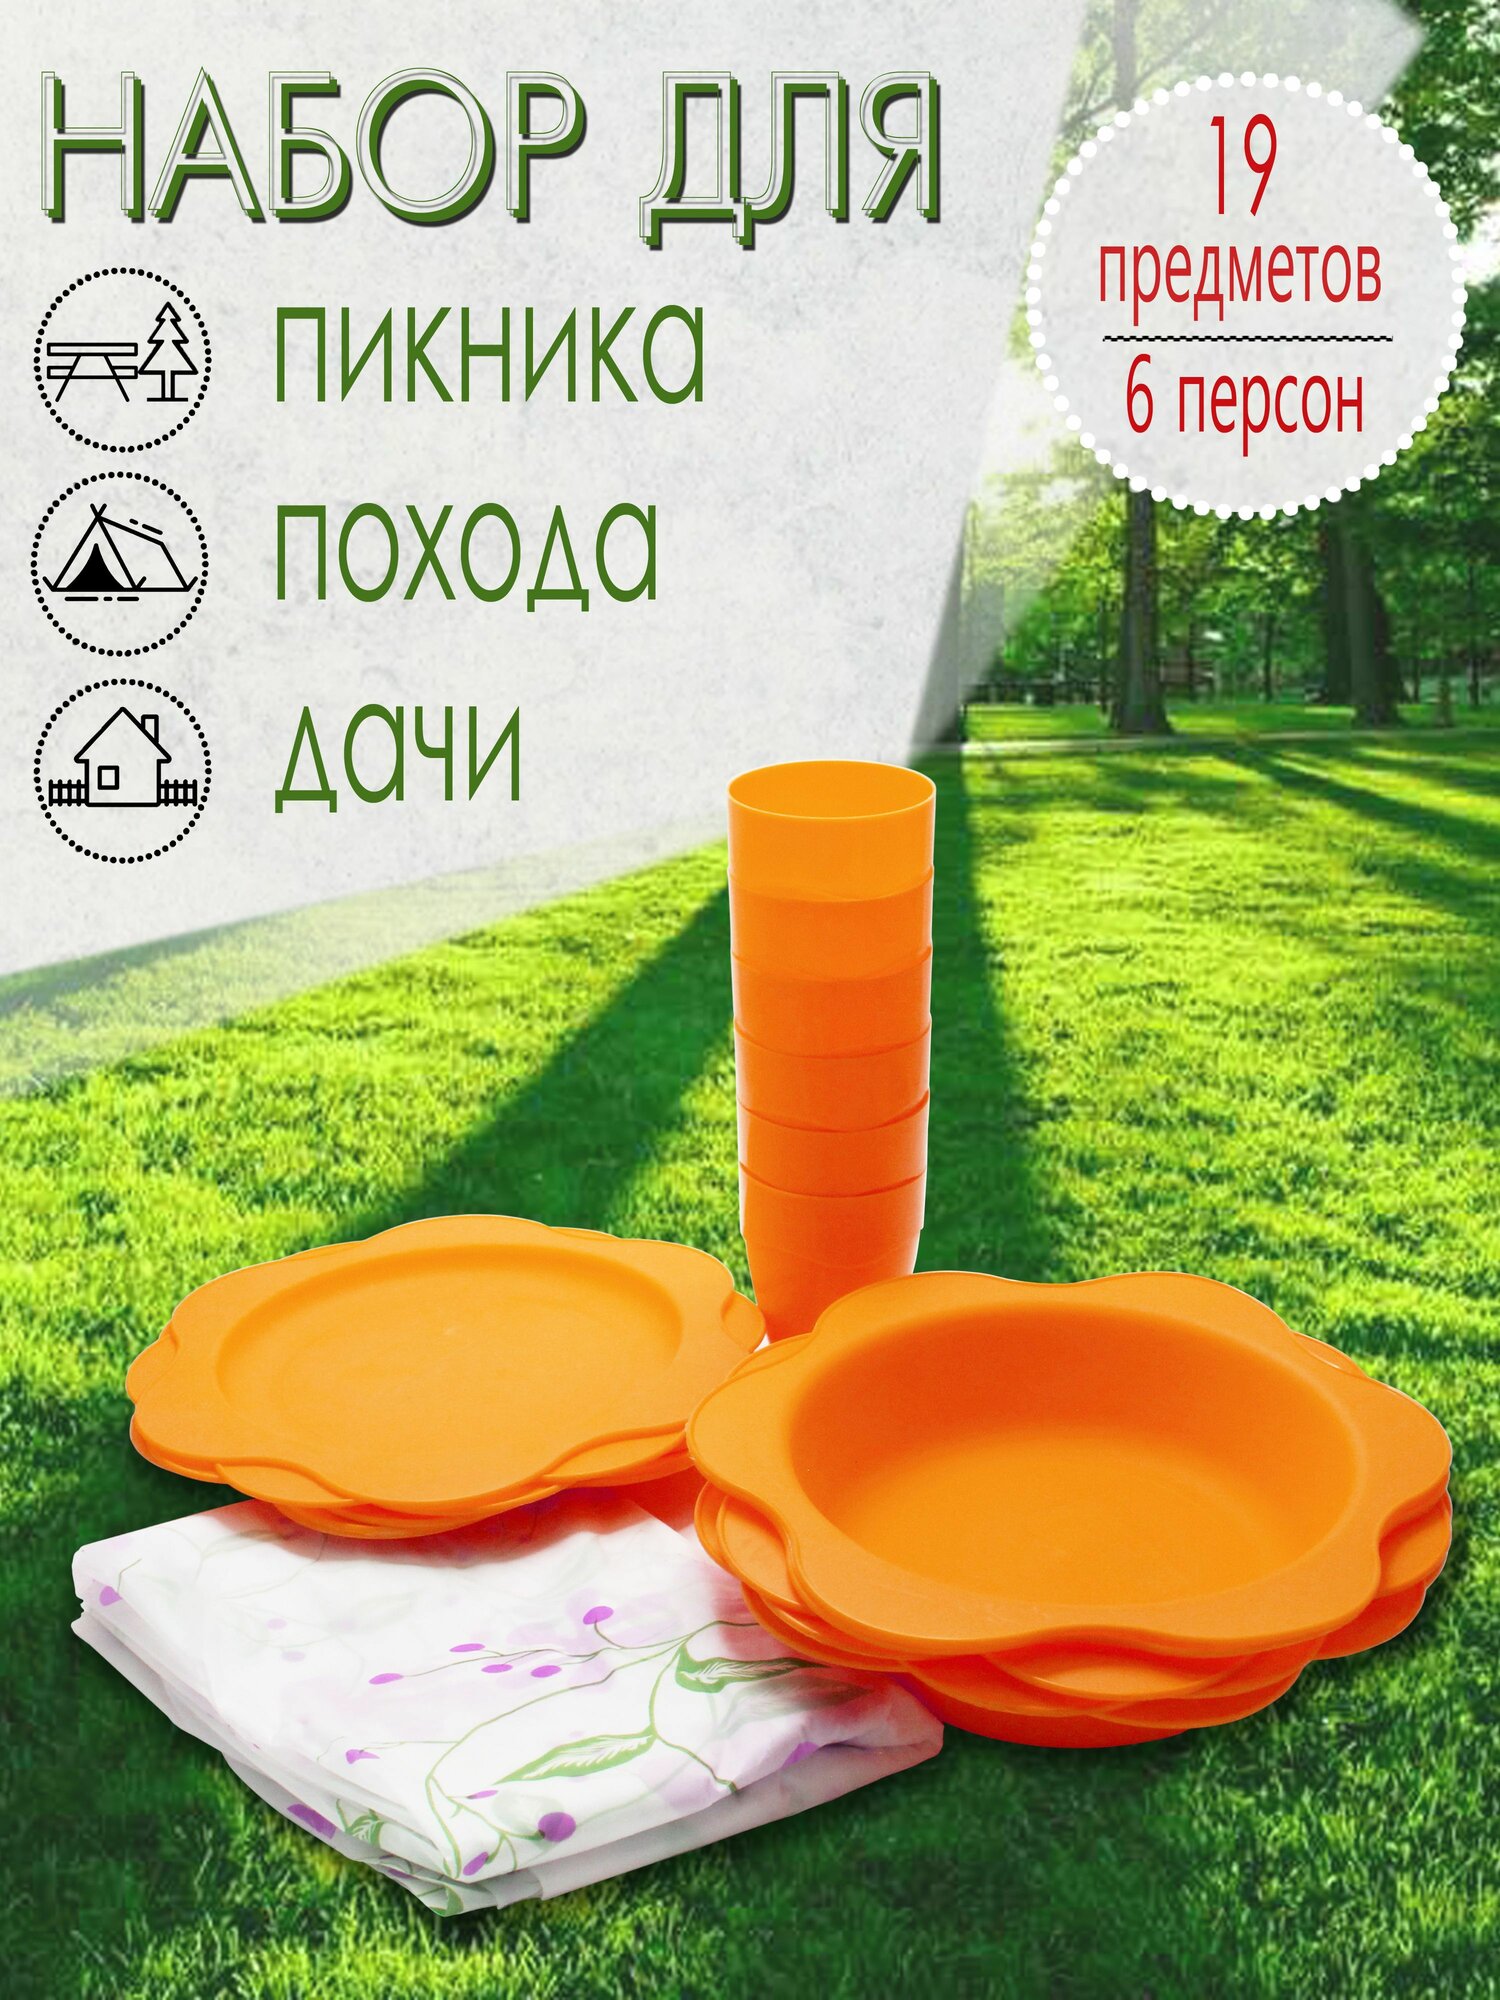 Набор для пикника, 6 персон, 19 предметов (оранжевый) НПО6Д